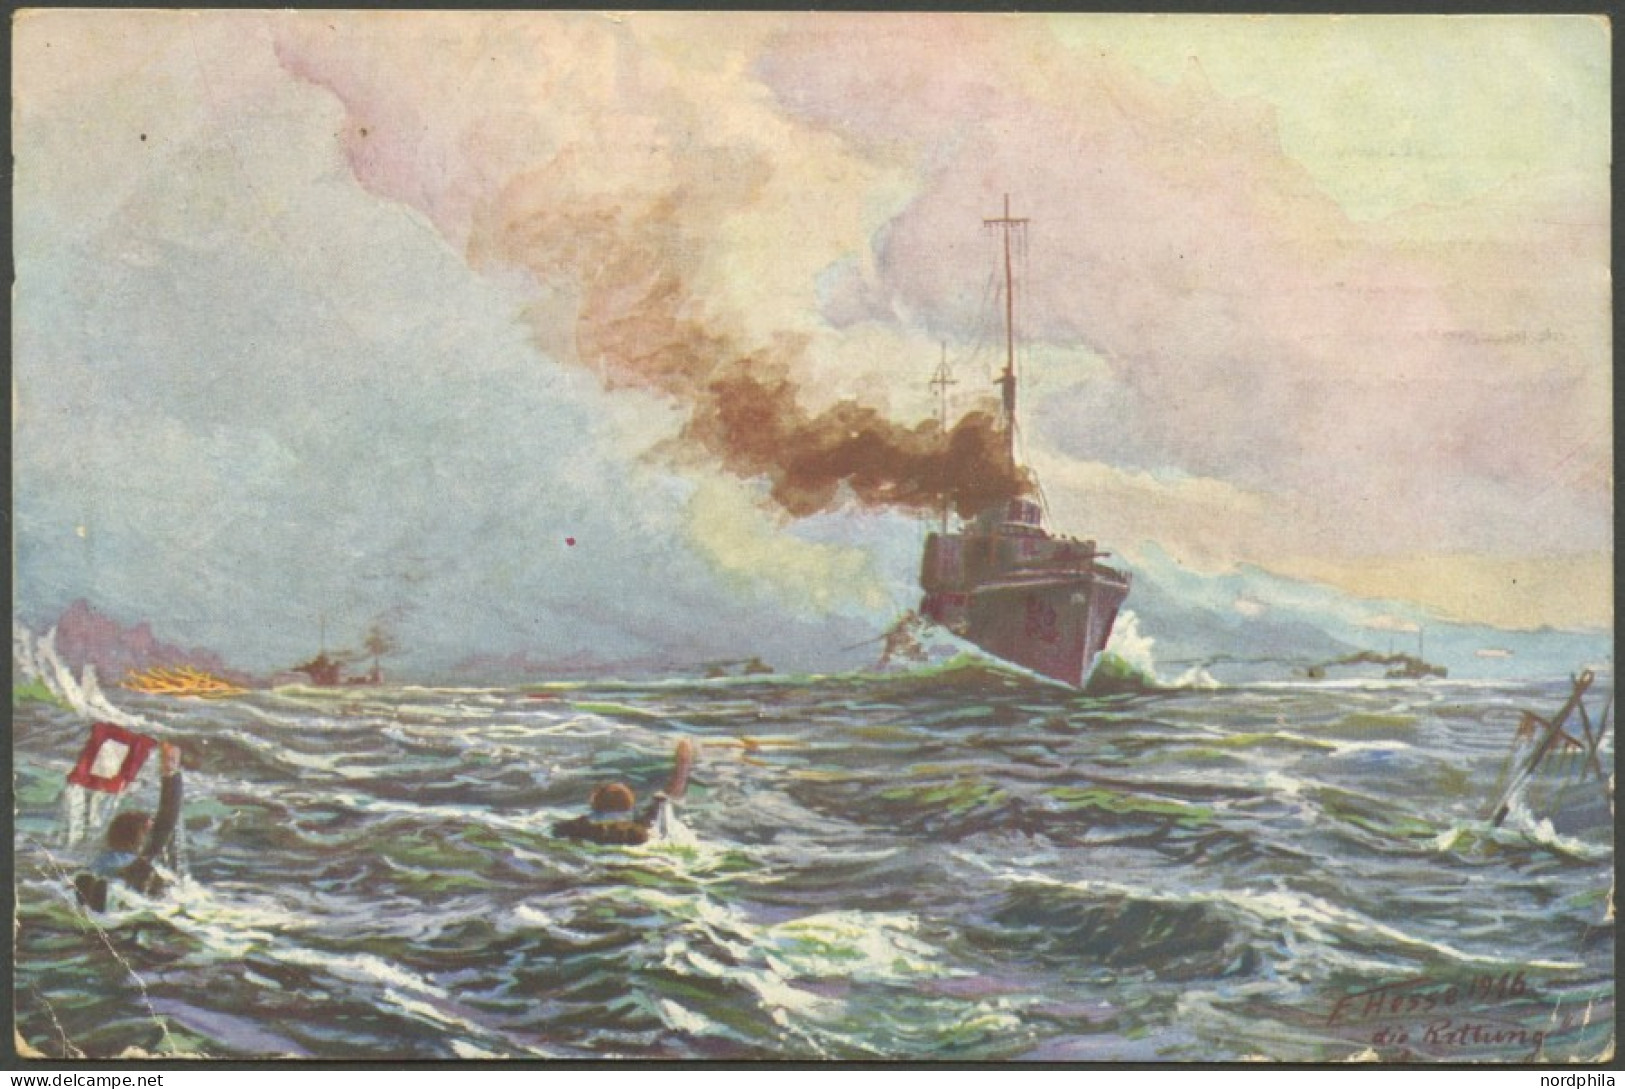 ALTE POSTKARTEN - SCHIFFE KAISERL. MARINE Skagerrak, Nach Der Schlacht. Rettung Durch Unsere Torpedoboote, Farbige Künst - Krieg